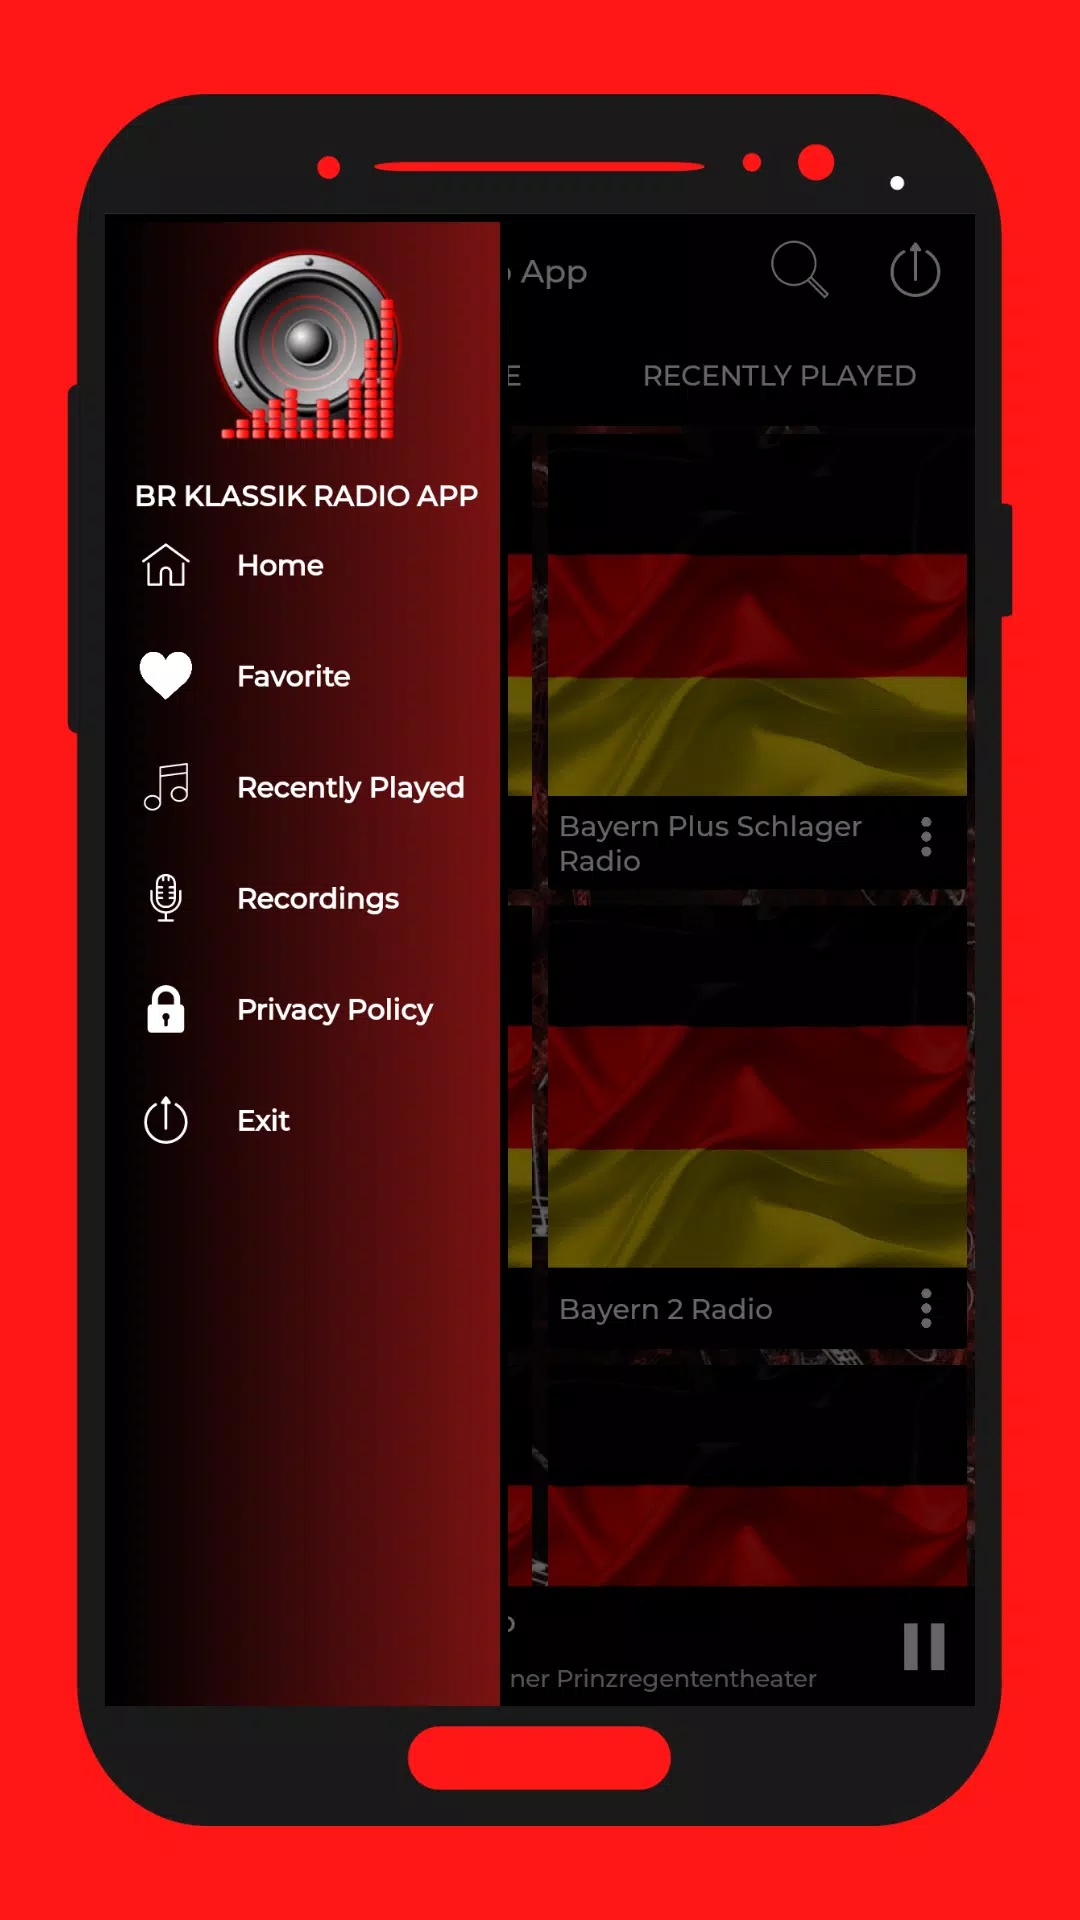 BR Klassik Radio App APK for Android Download